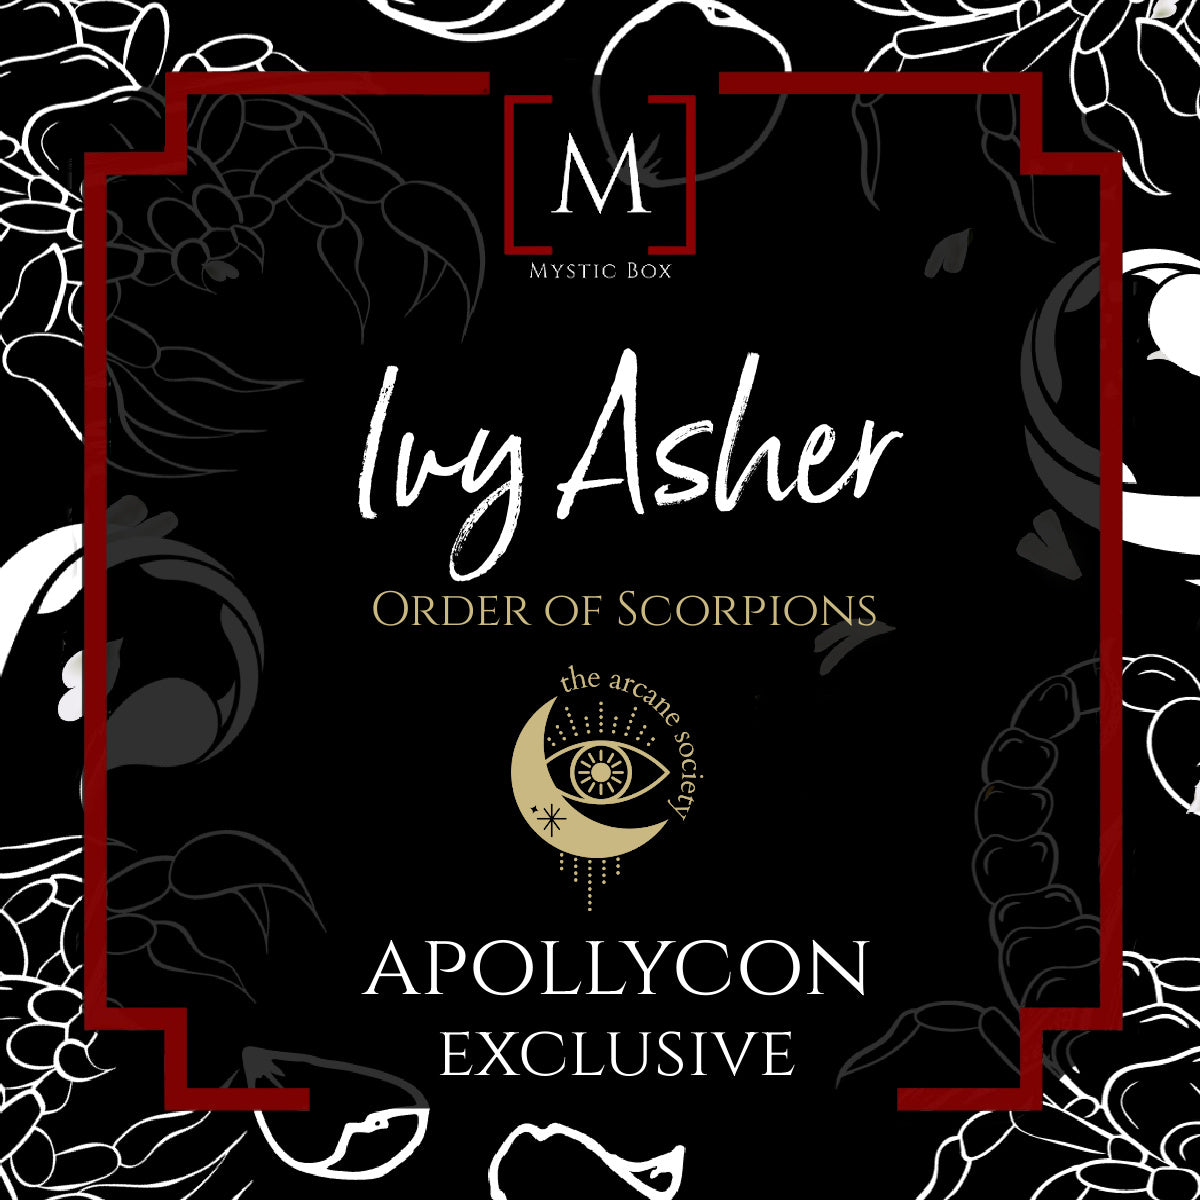 Apollycon - Ivy Asher